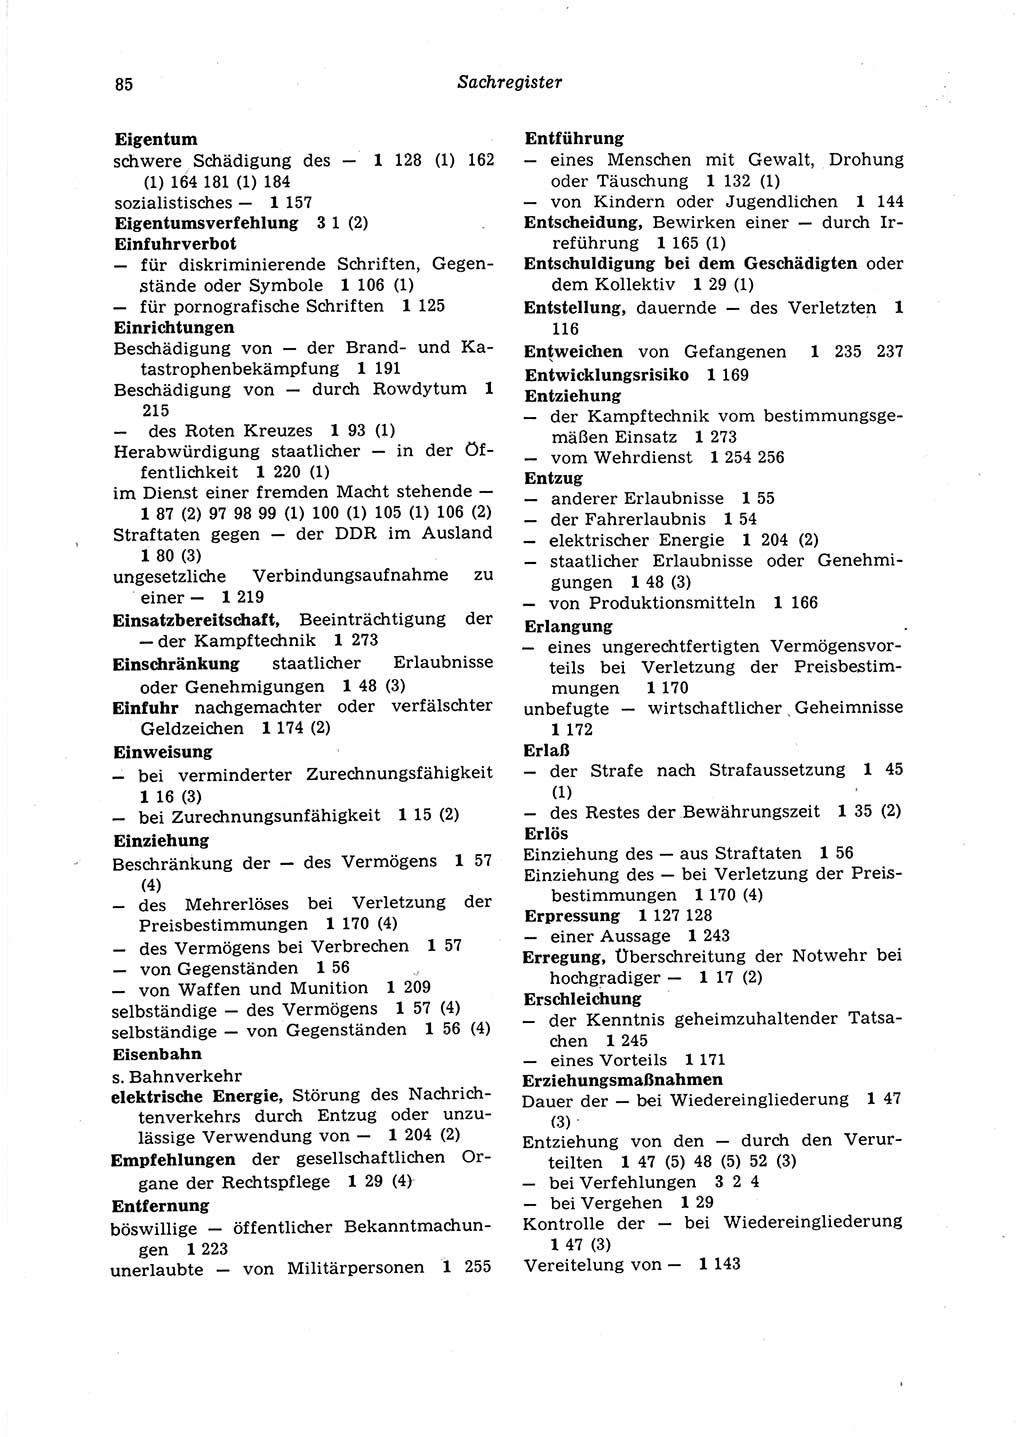 Strafgesetzbuch (StGB) der Deutschen Demokratischen Republik (DDR) 1987, Seite 85 (StGB DDR 1987, S. 85)